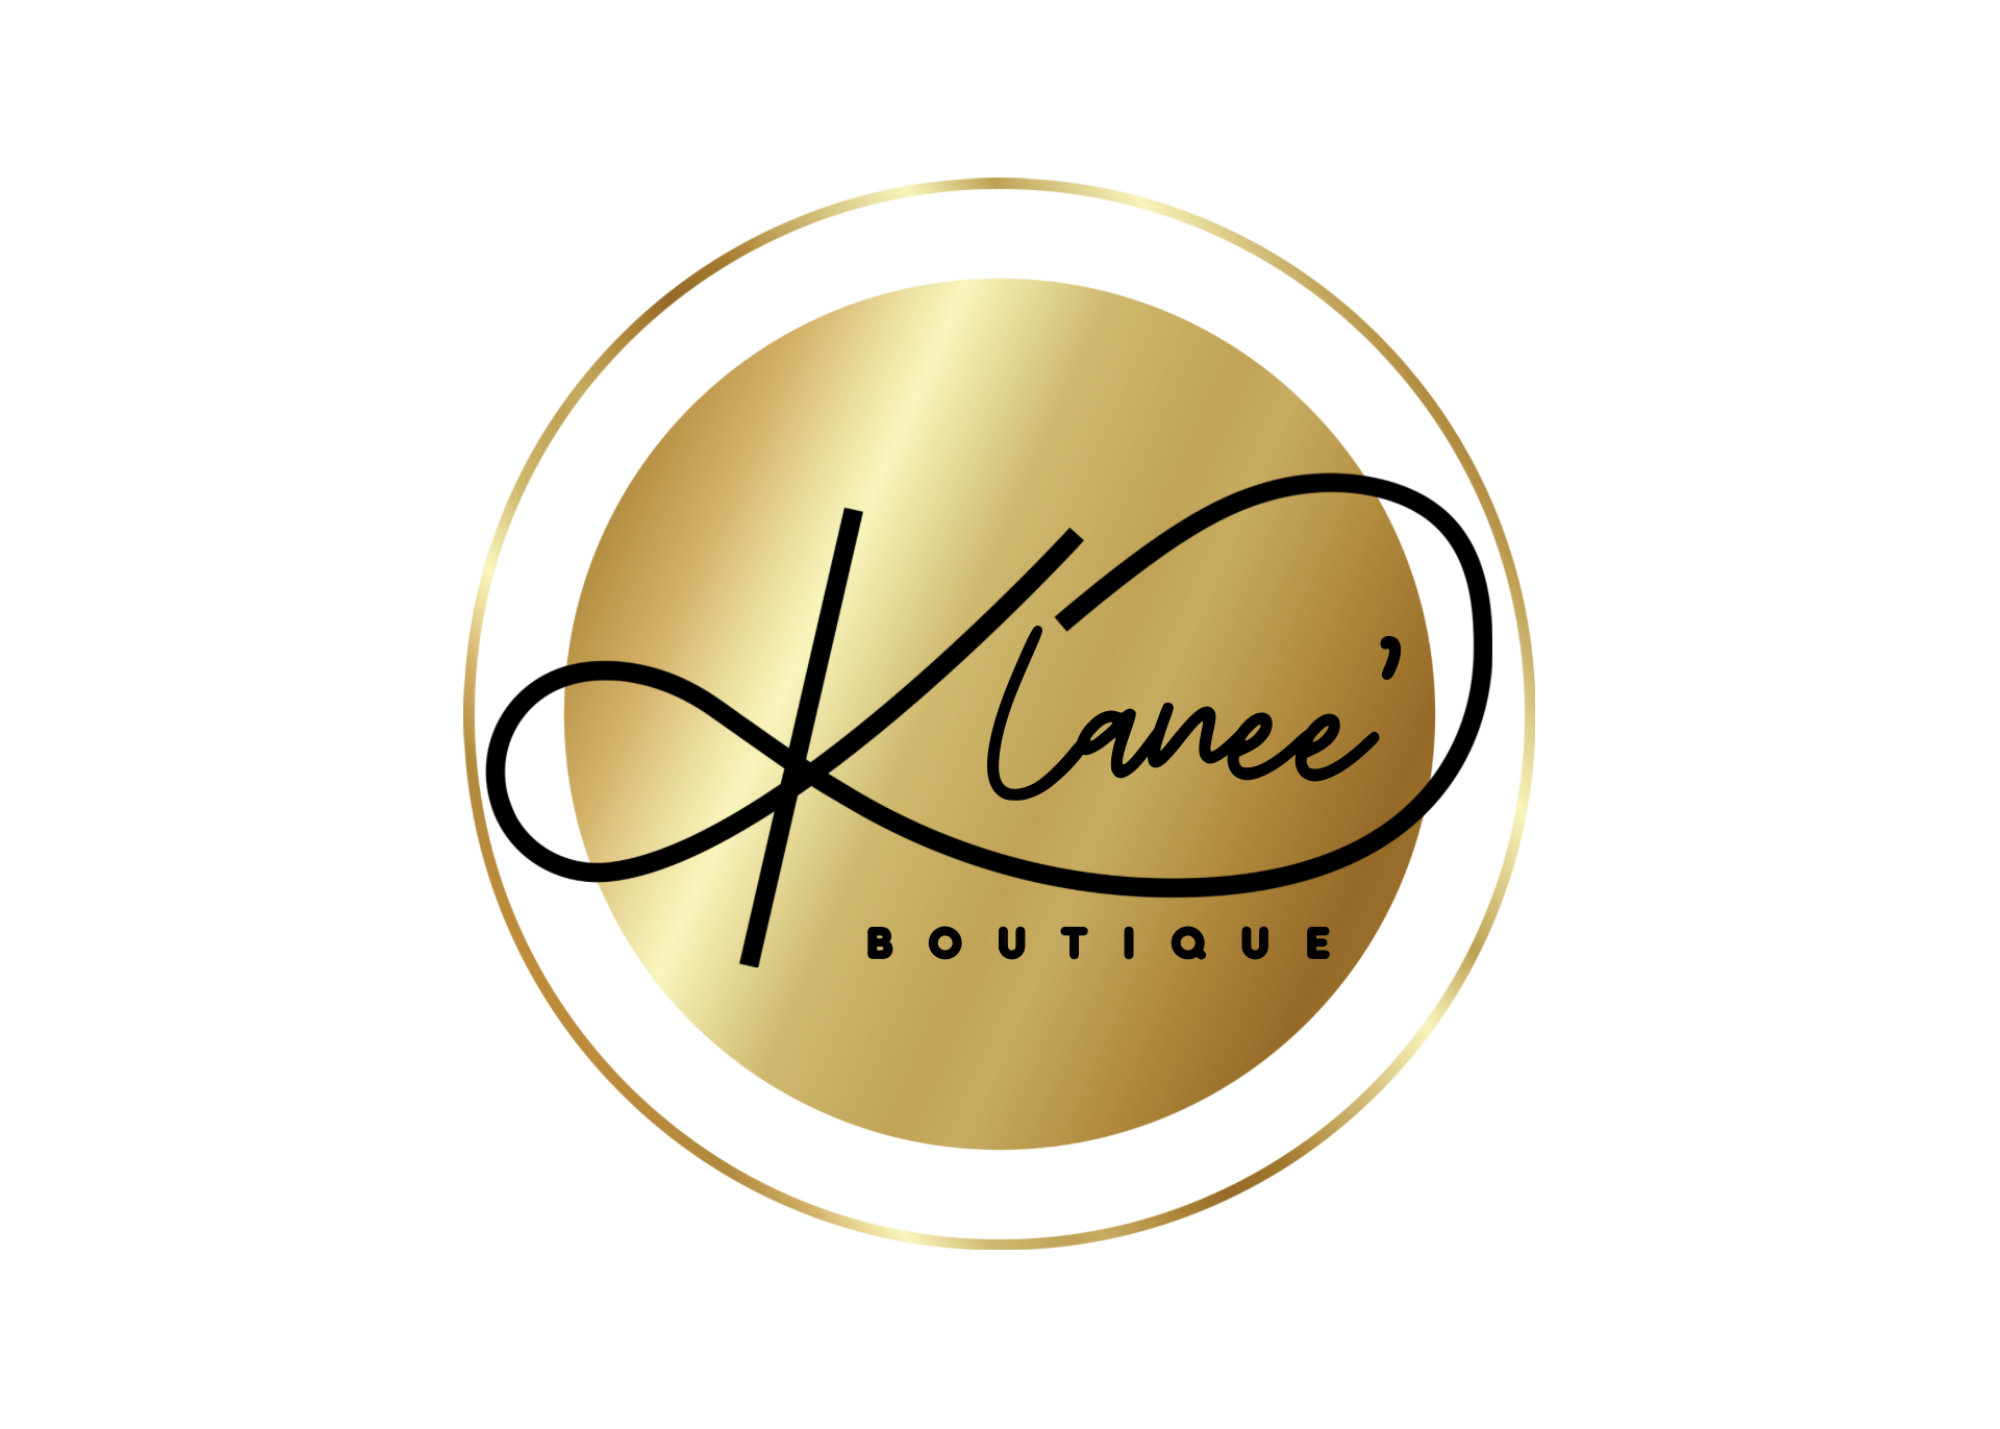 K. Lanee' Boutique